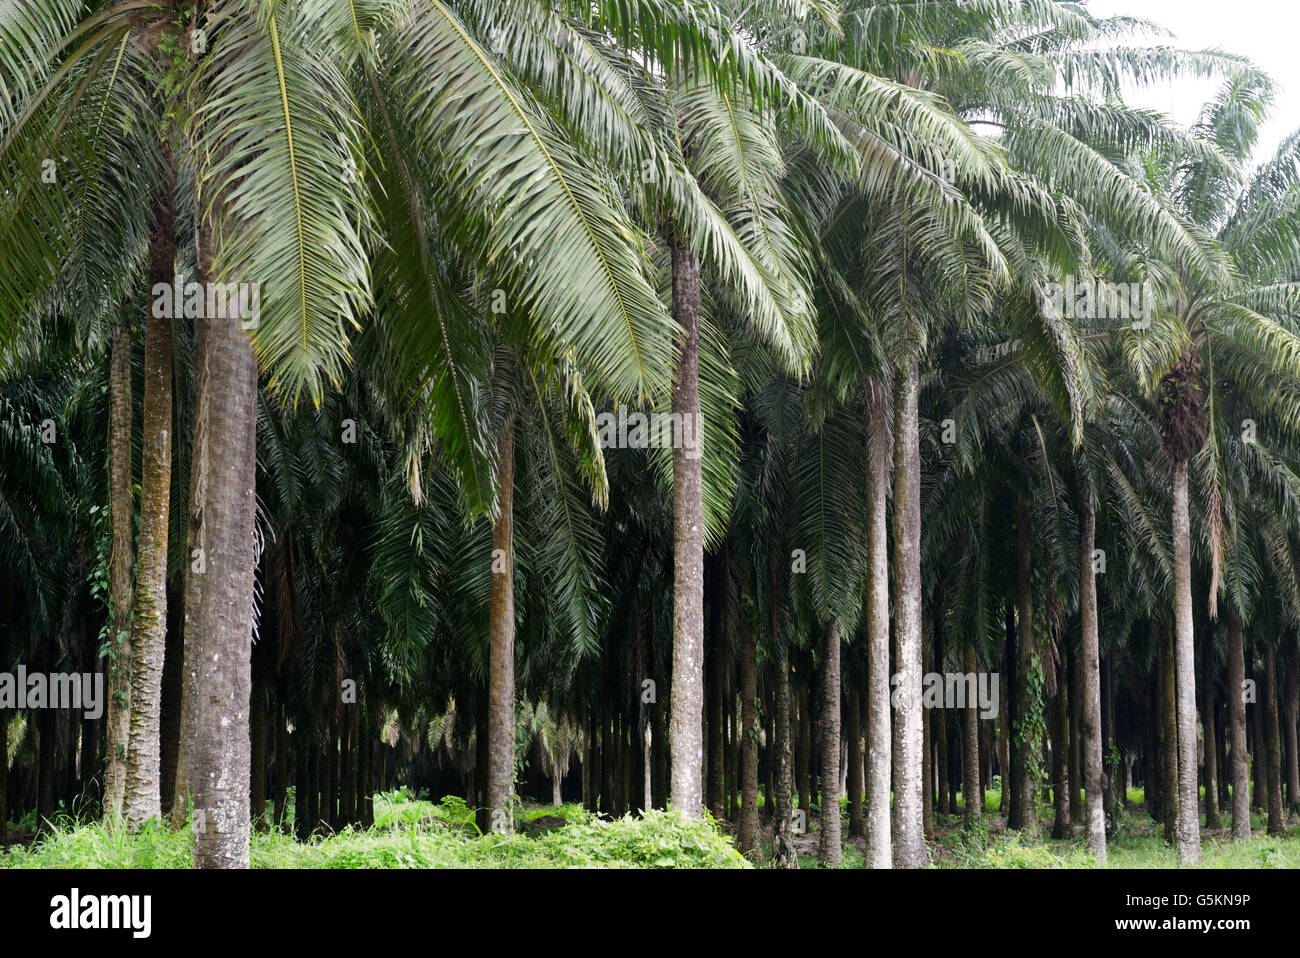 Plantation de palmier à huile, près de Quepos, CR. Ces monocultures très peu de soutien et d'espèces sauvages contribue à la perte de biodiversité Banque D'Images